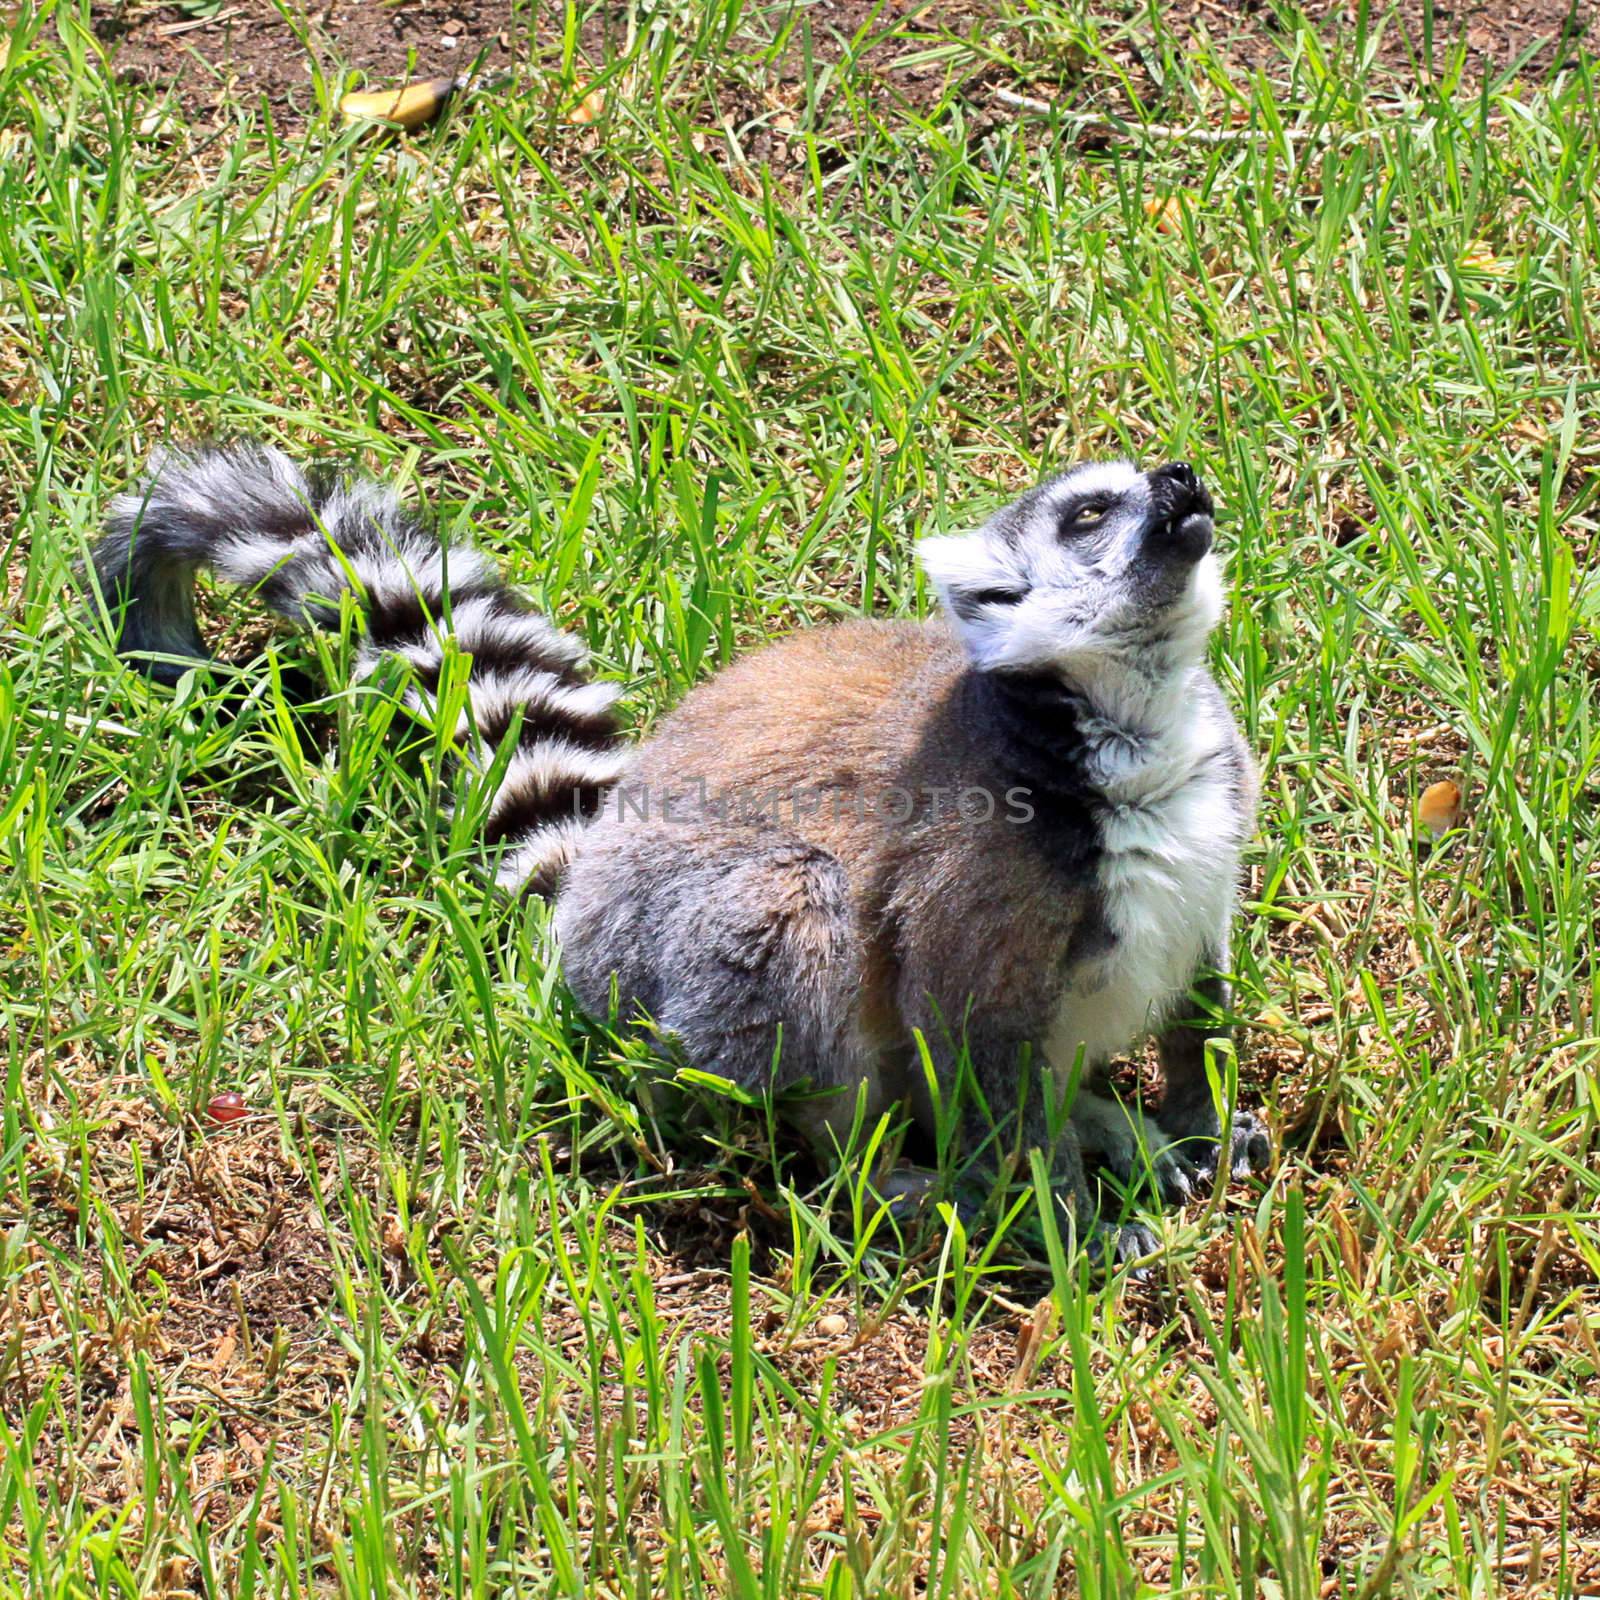 Ring-tailed Lemur - Lemur catta